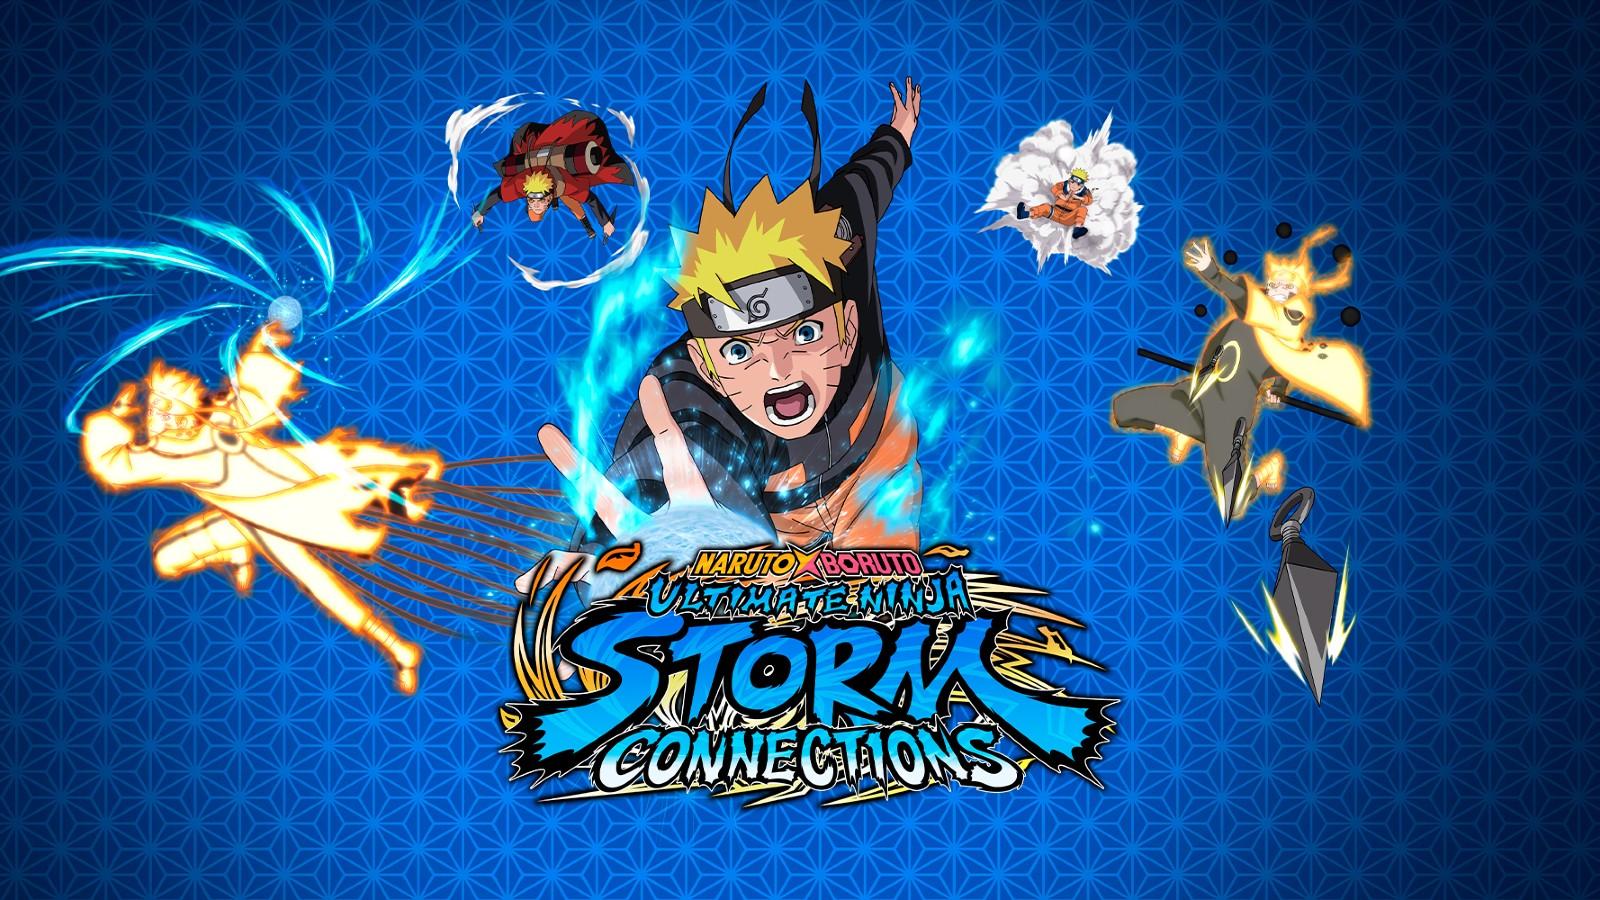 Naruto X Boruto Ultimate Ninja Storm Connections Pre Order Bonuses & Edition Differences